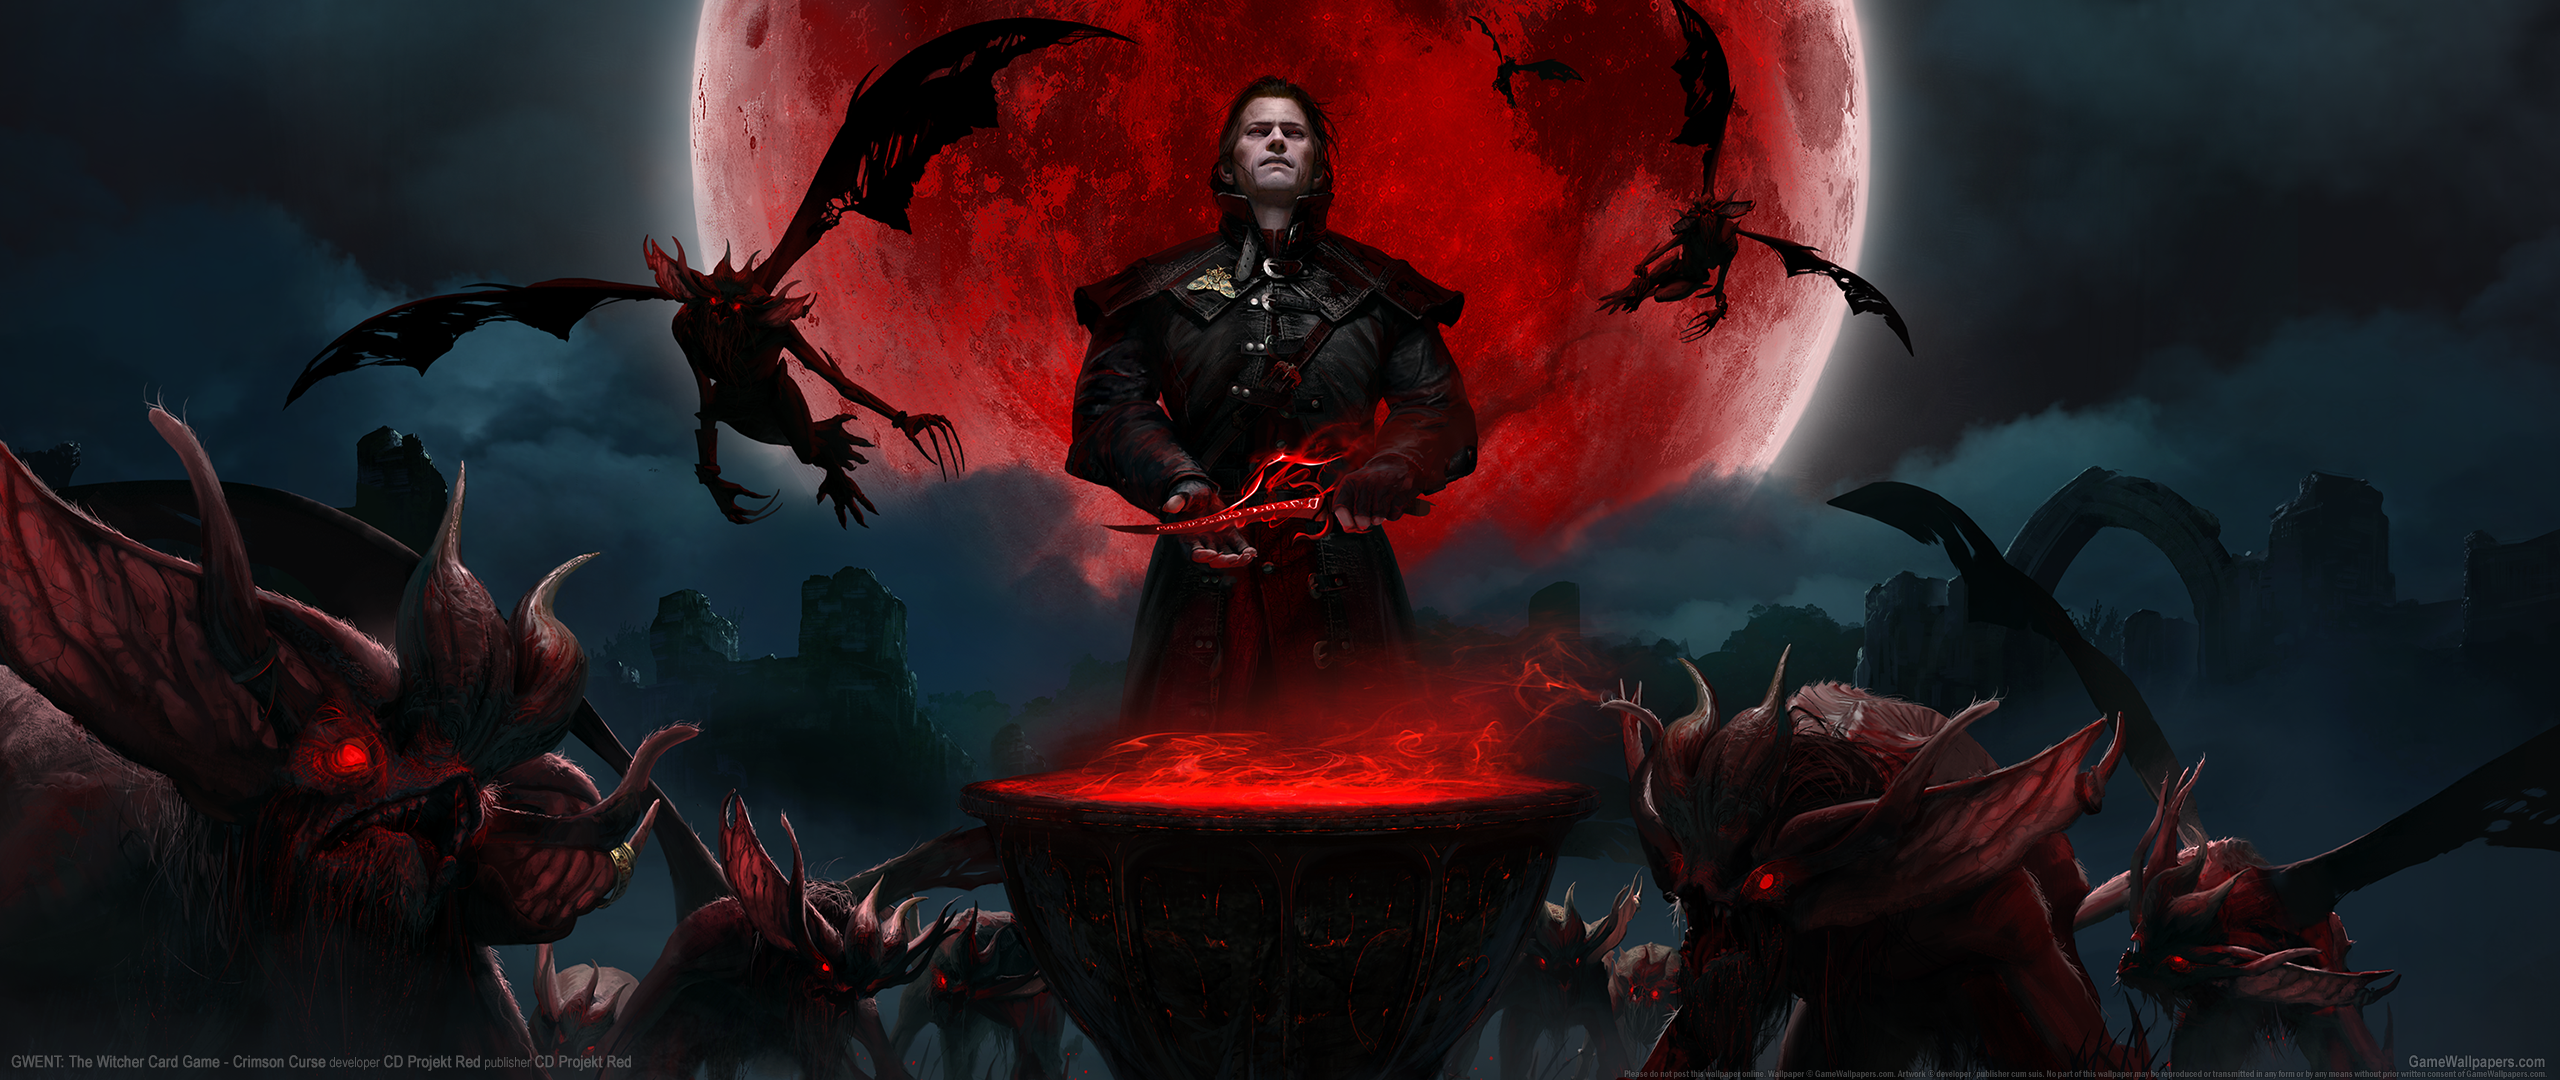 GWENT: The Witcher Card Game - Crimson Curse 2560x1080 fondo de escritorio 01